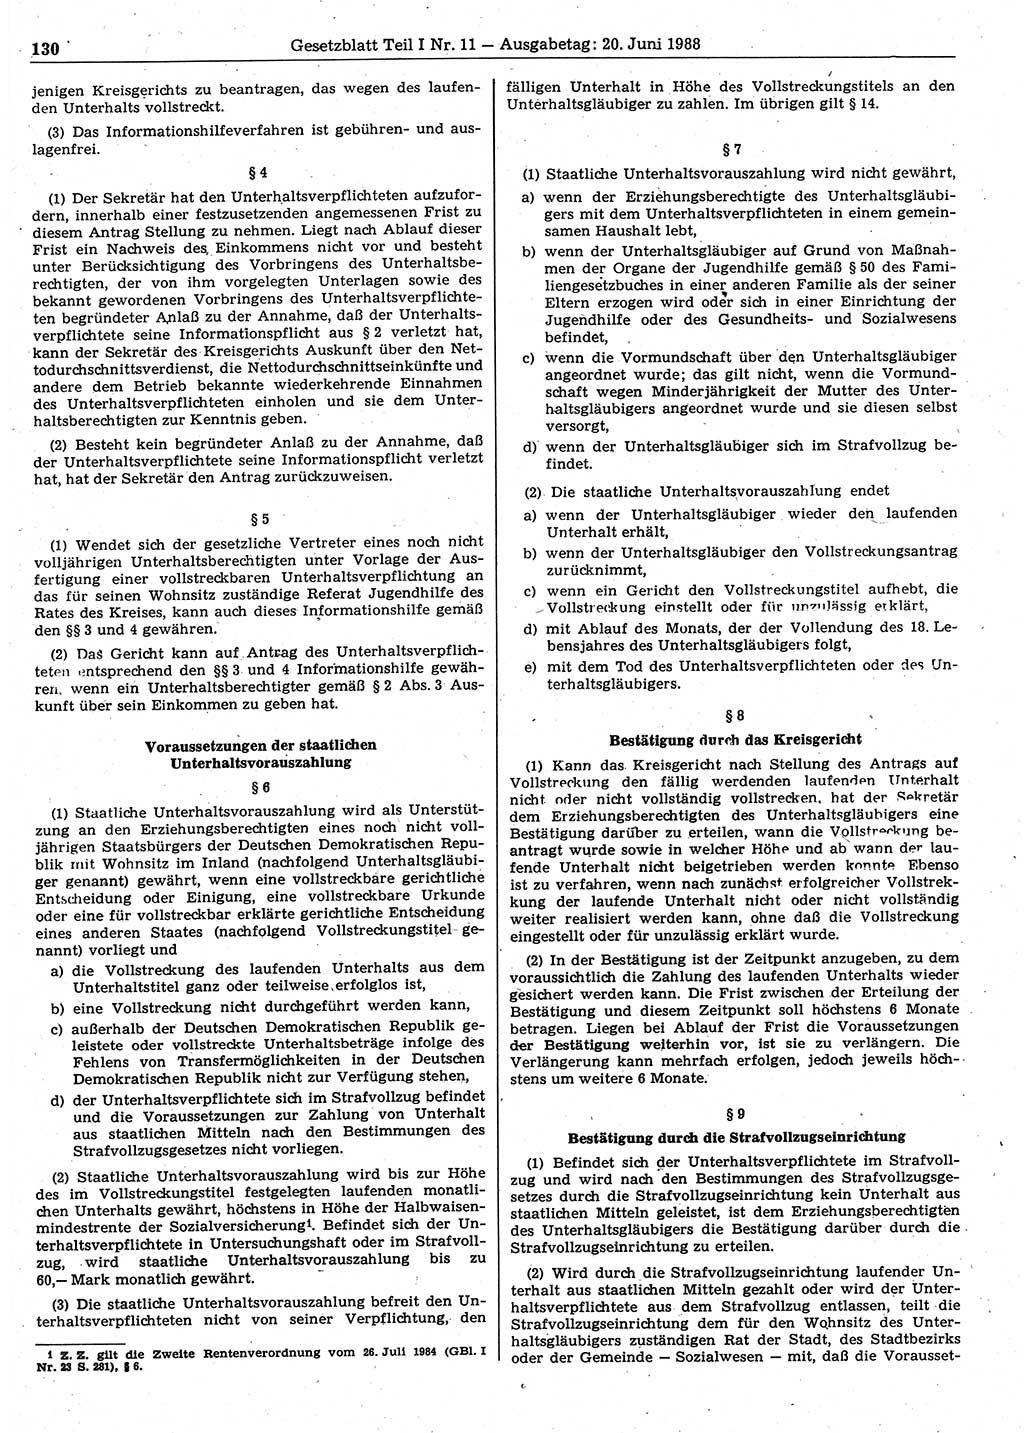 Gesetzblatt (GBl.) der Deutschen Demokratischen Republik (DDR) Teil Ⅰ 1988, Seite 130 (GBl. DDR Ⅰ 1988, S. 130)